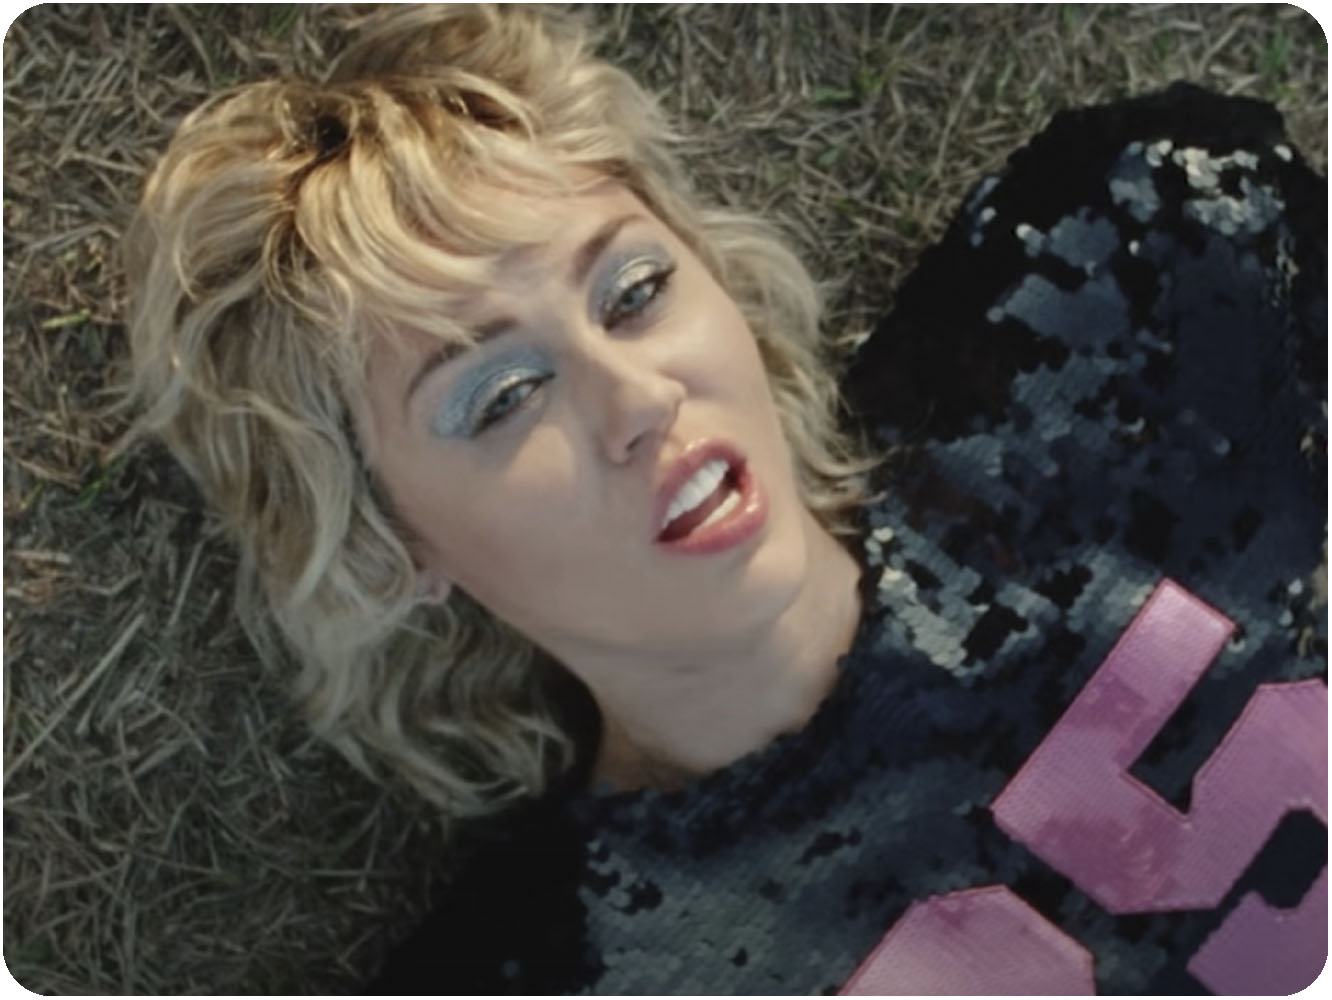  Inversión de 0,60 euros en el vídeo de ‘Angels Like You’ de Miley Cyrus